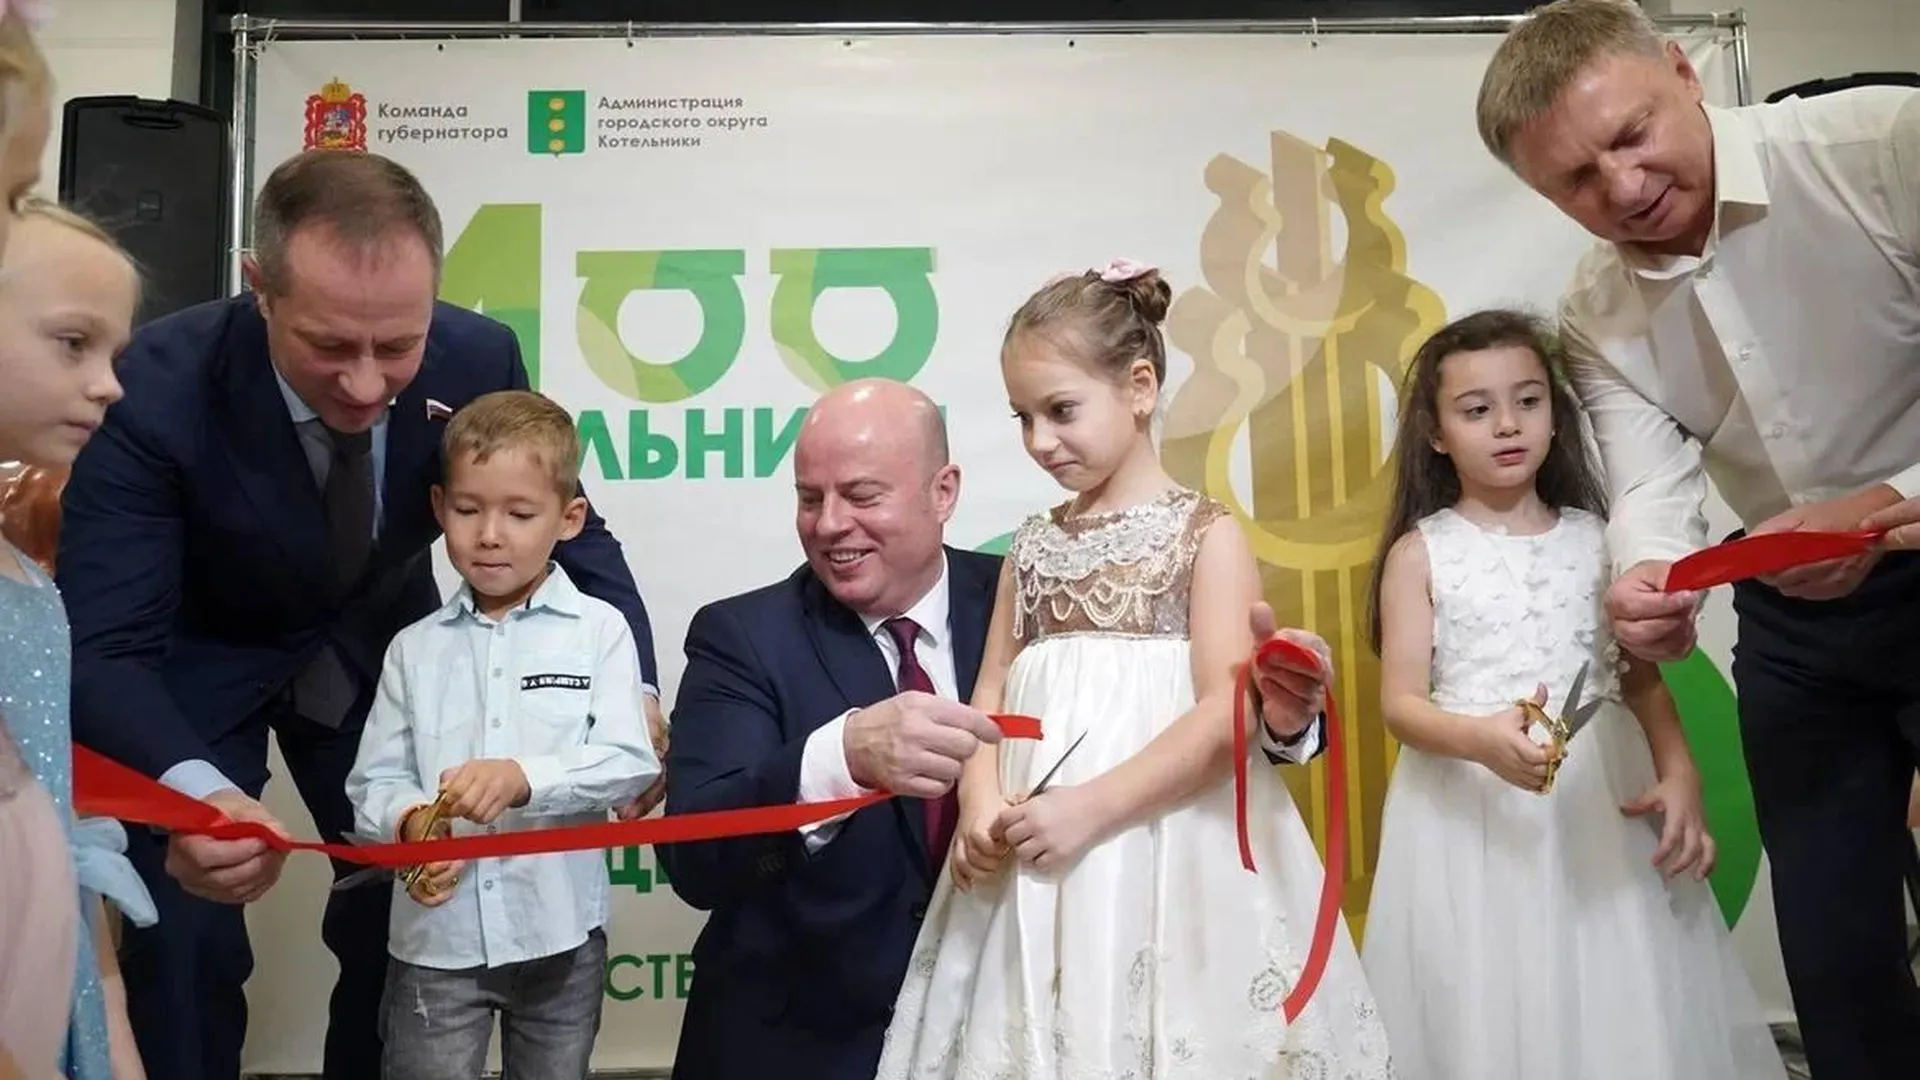 Торжественное открытие нового корпуса одного из детских садов состоялось в Котельниках